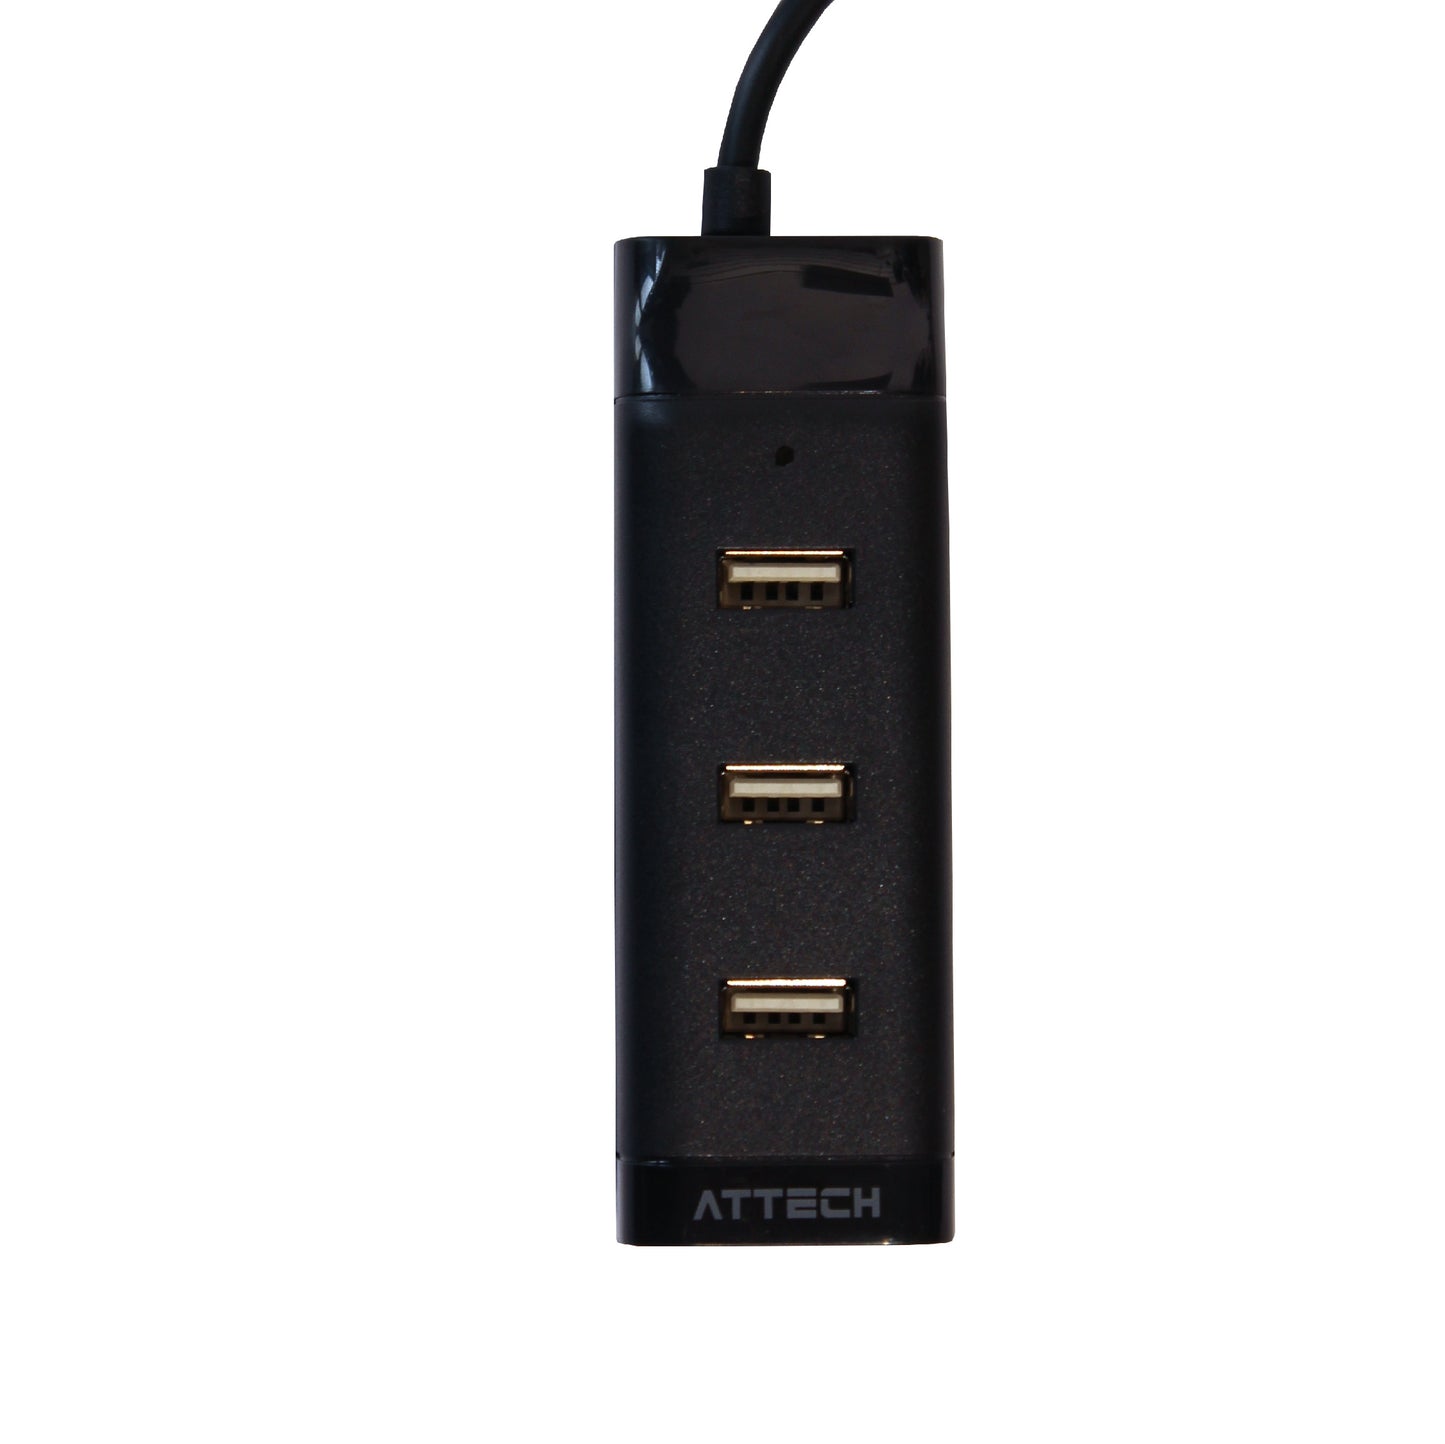 HUB Multipuertos Attech AT006 USB 2.0 x4